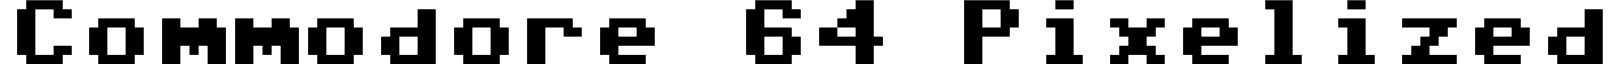 Commodore 64 Pixelized font - Commodore Pixelized v1.2.ttf